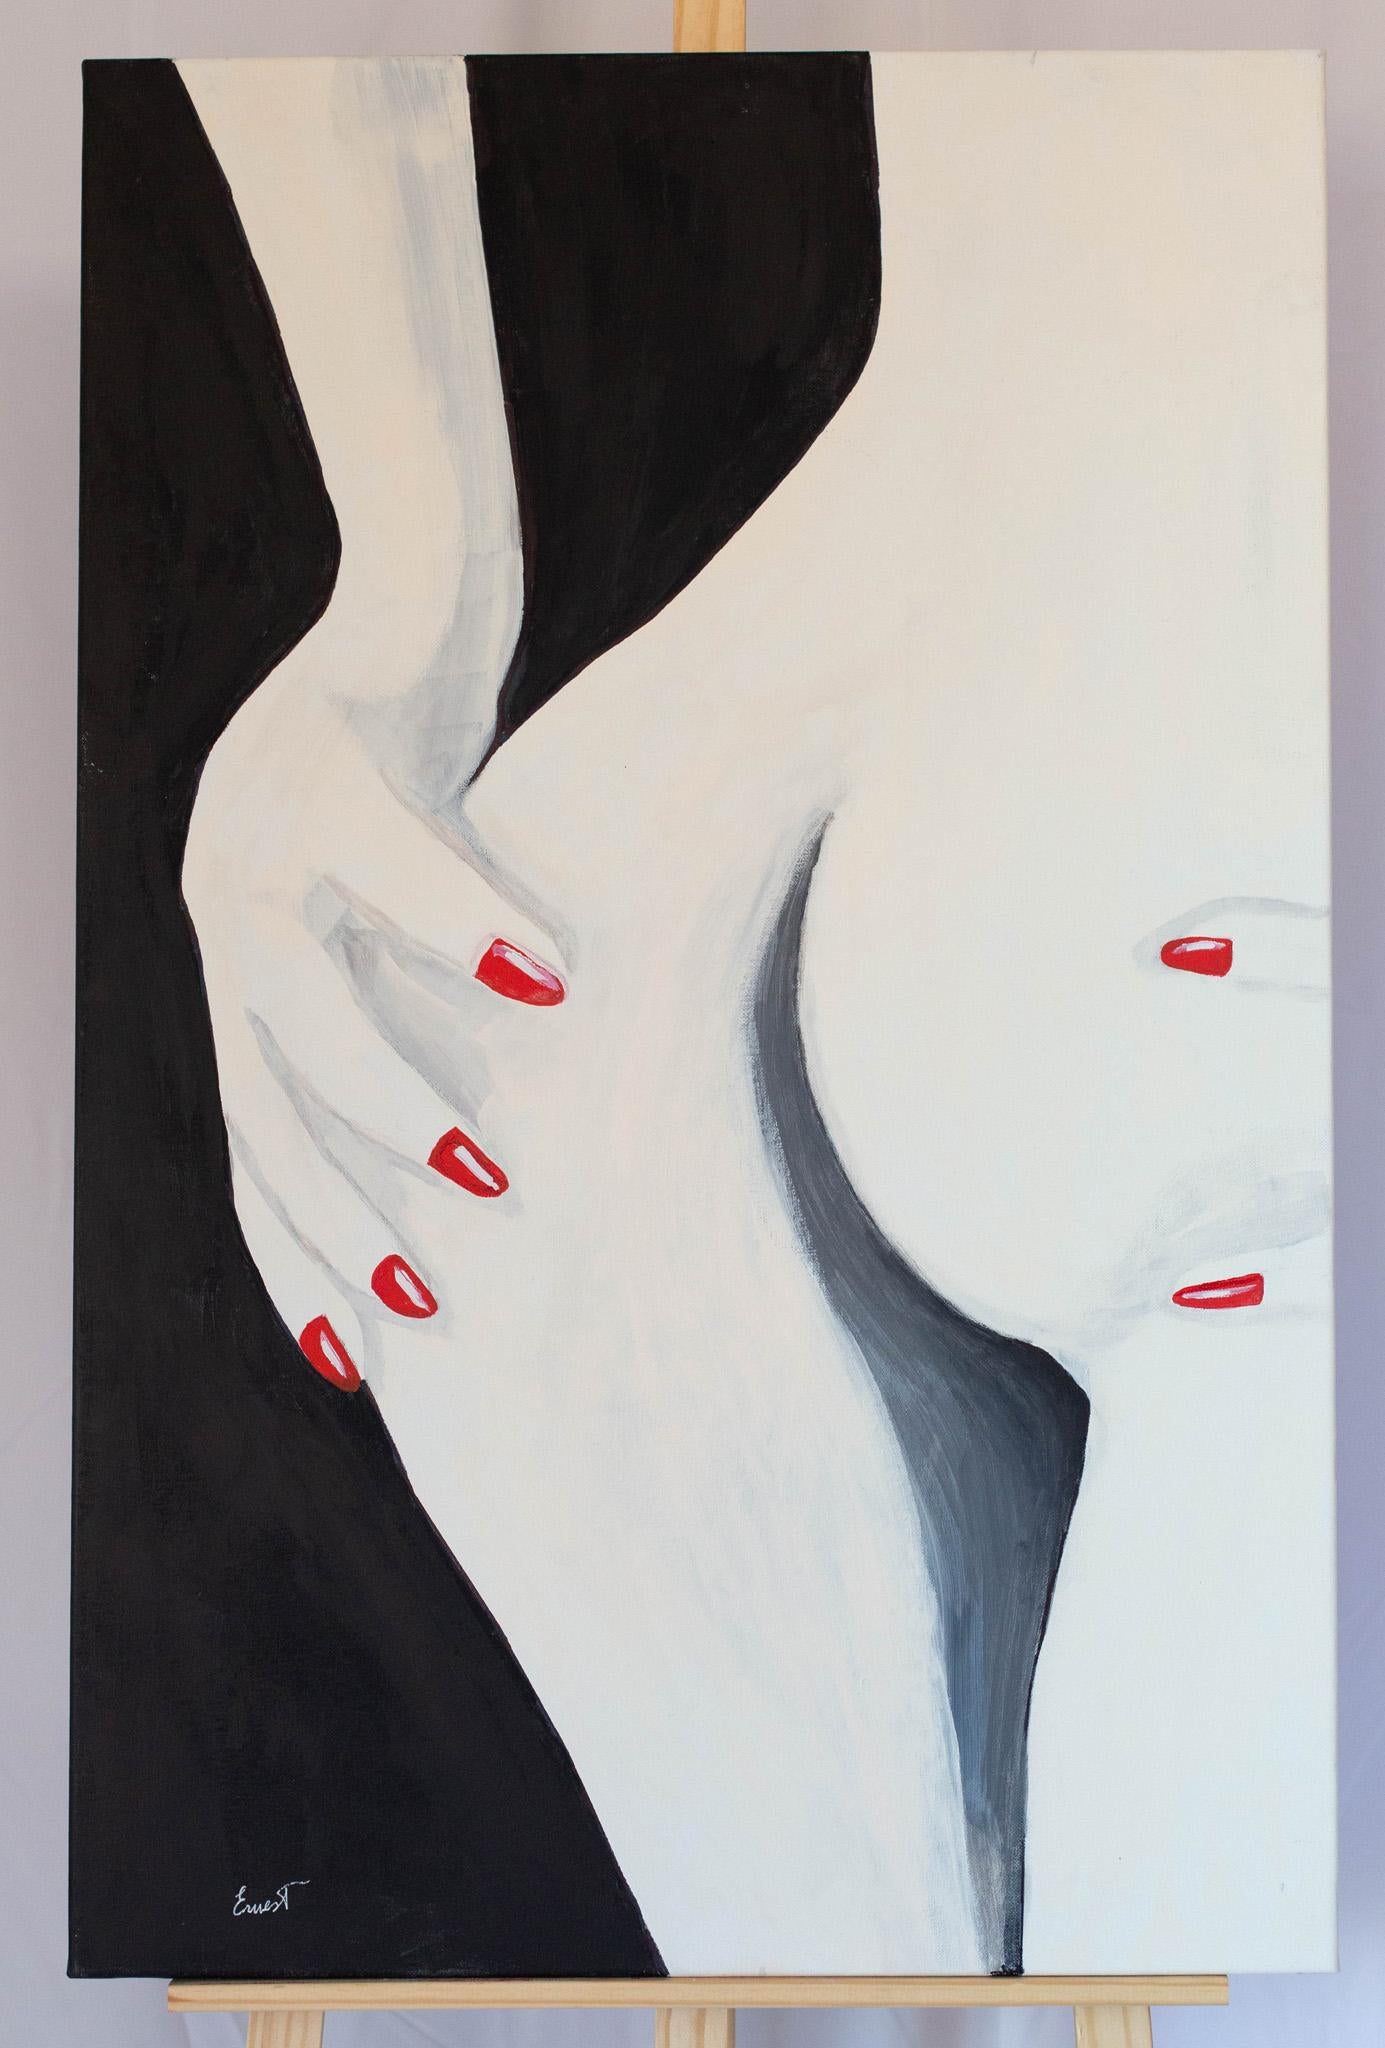 Manos uñas rojas - Painting by Ernest Carneado